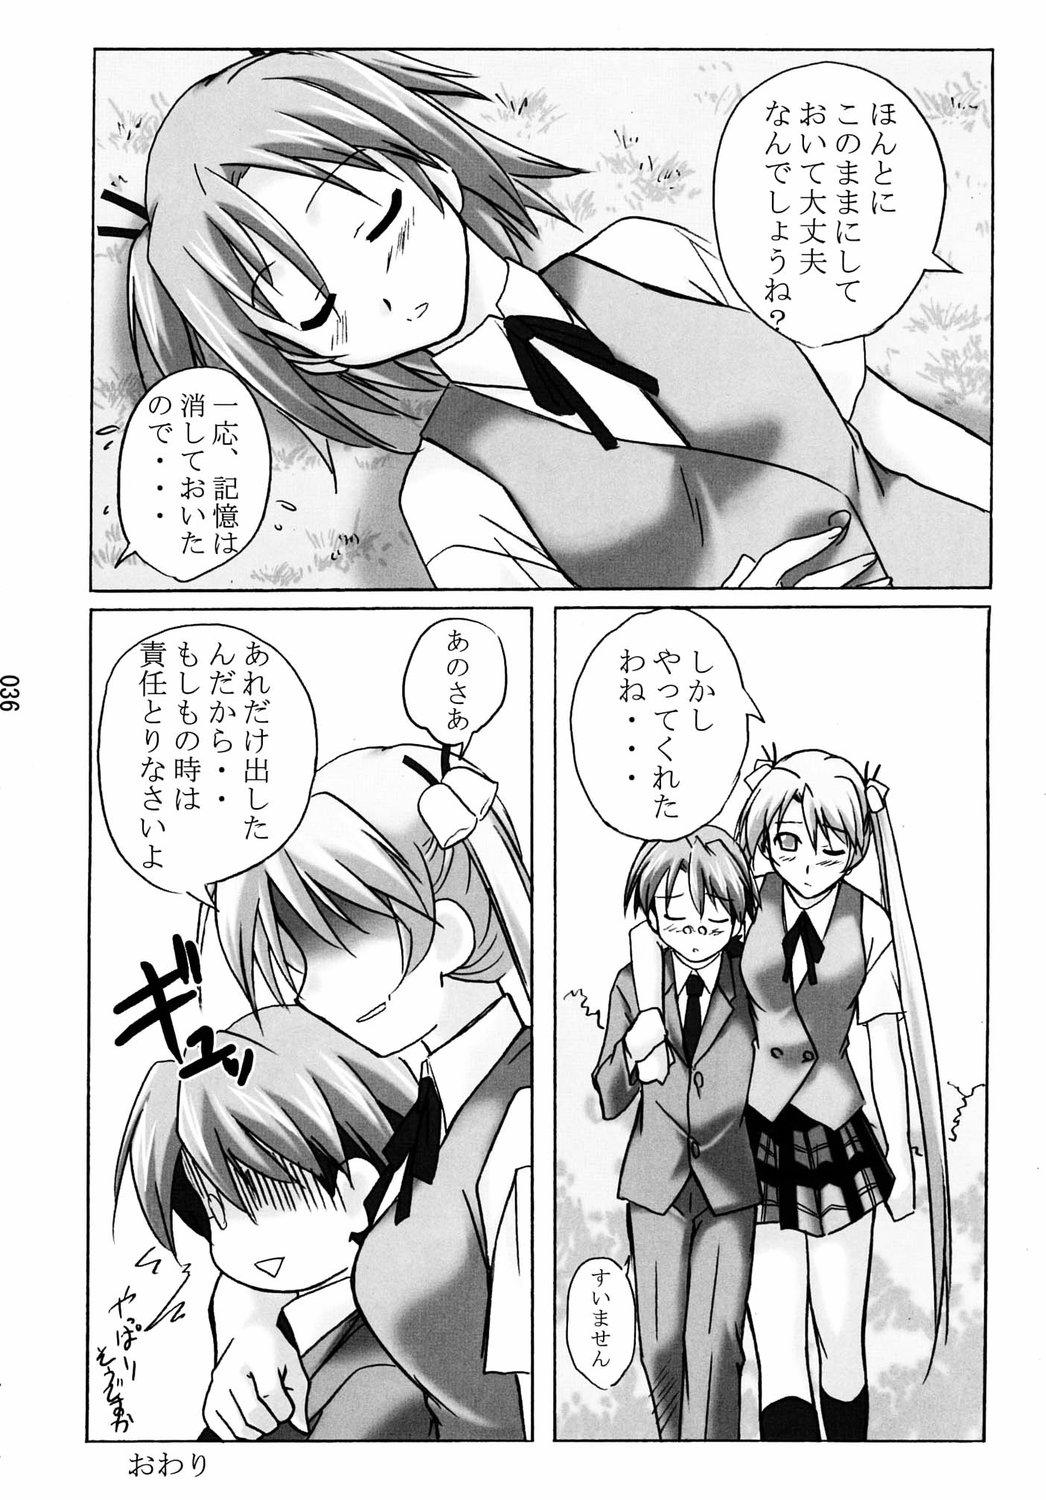 Wet Asu Maki! - Mahou sensei negima Snatch - Page 34